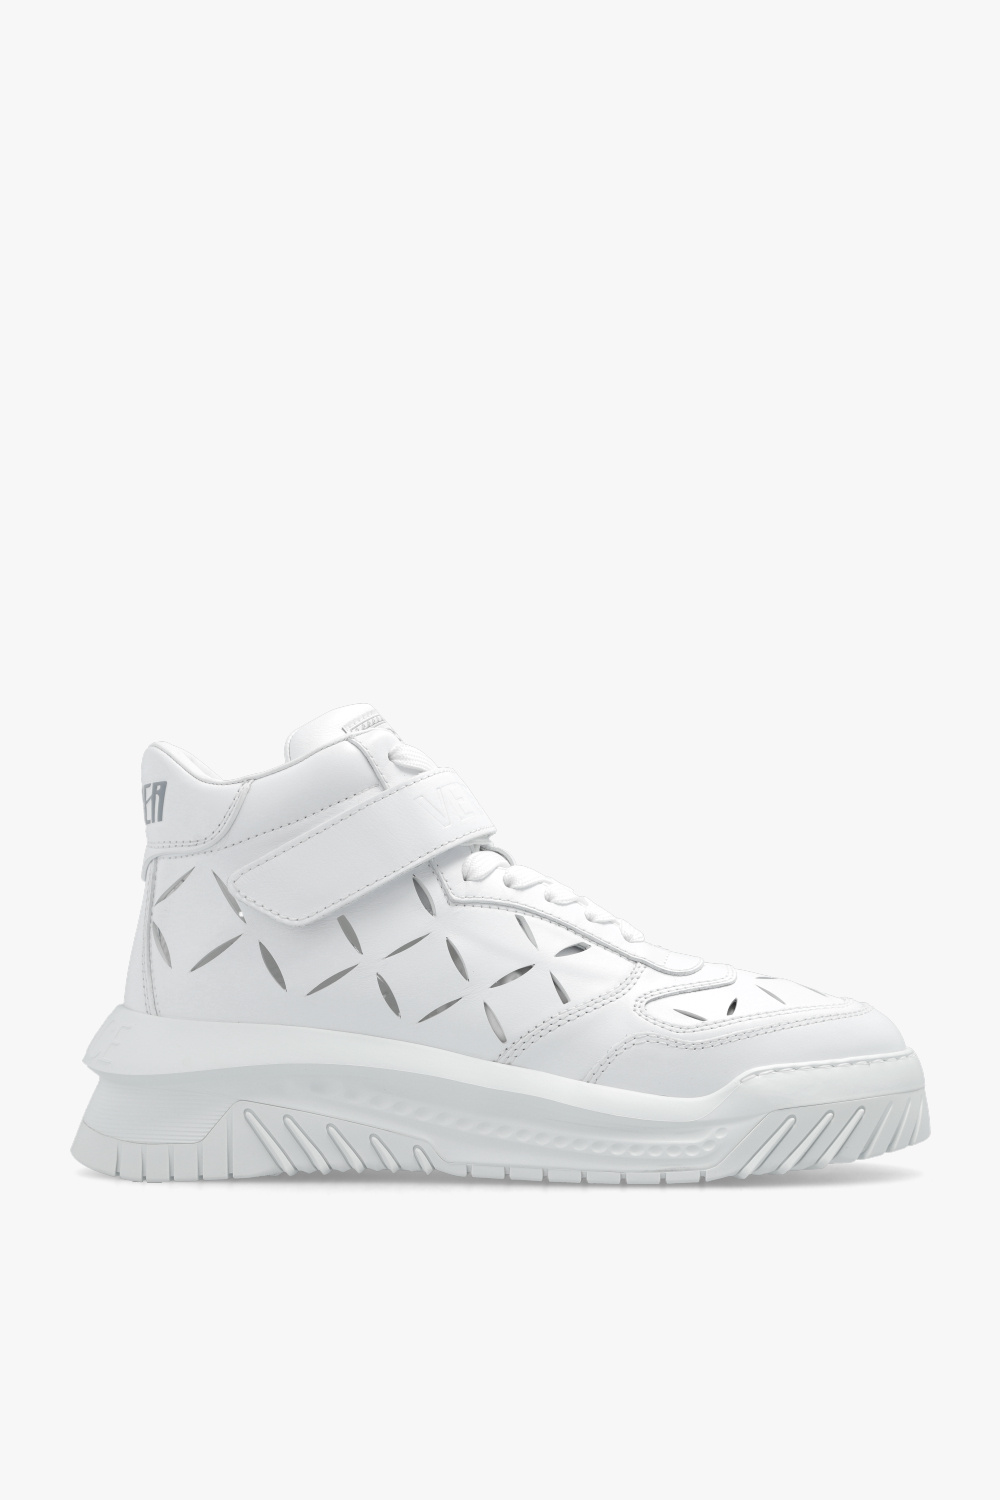 Prominente Clasificación Petrificar IetpShops Norway - White 'Odissea' sneakers Versace - zapatillas de running  niño niña neutro voladoras talla 34 negras